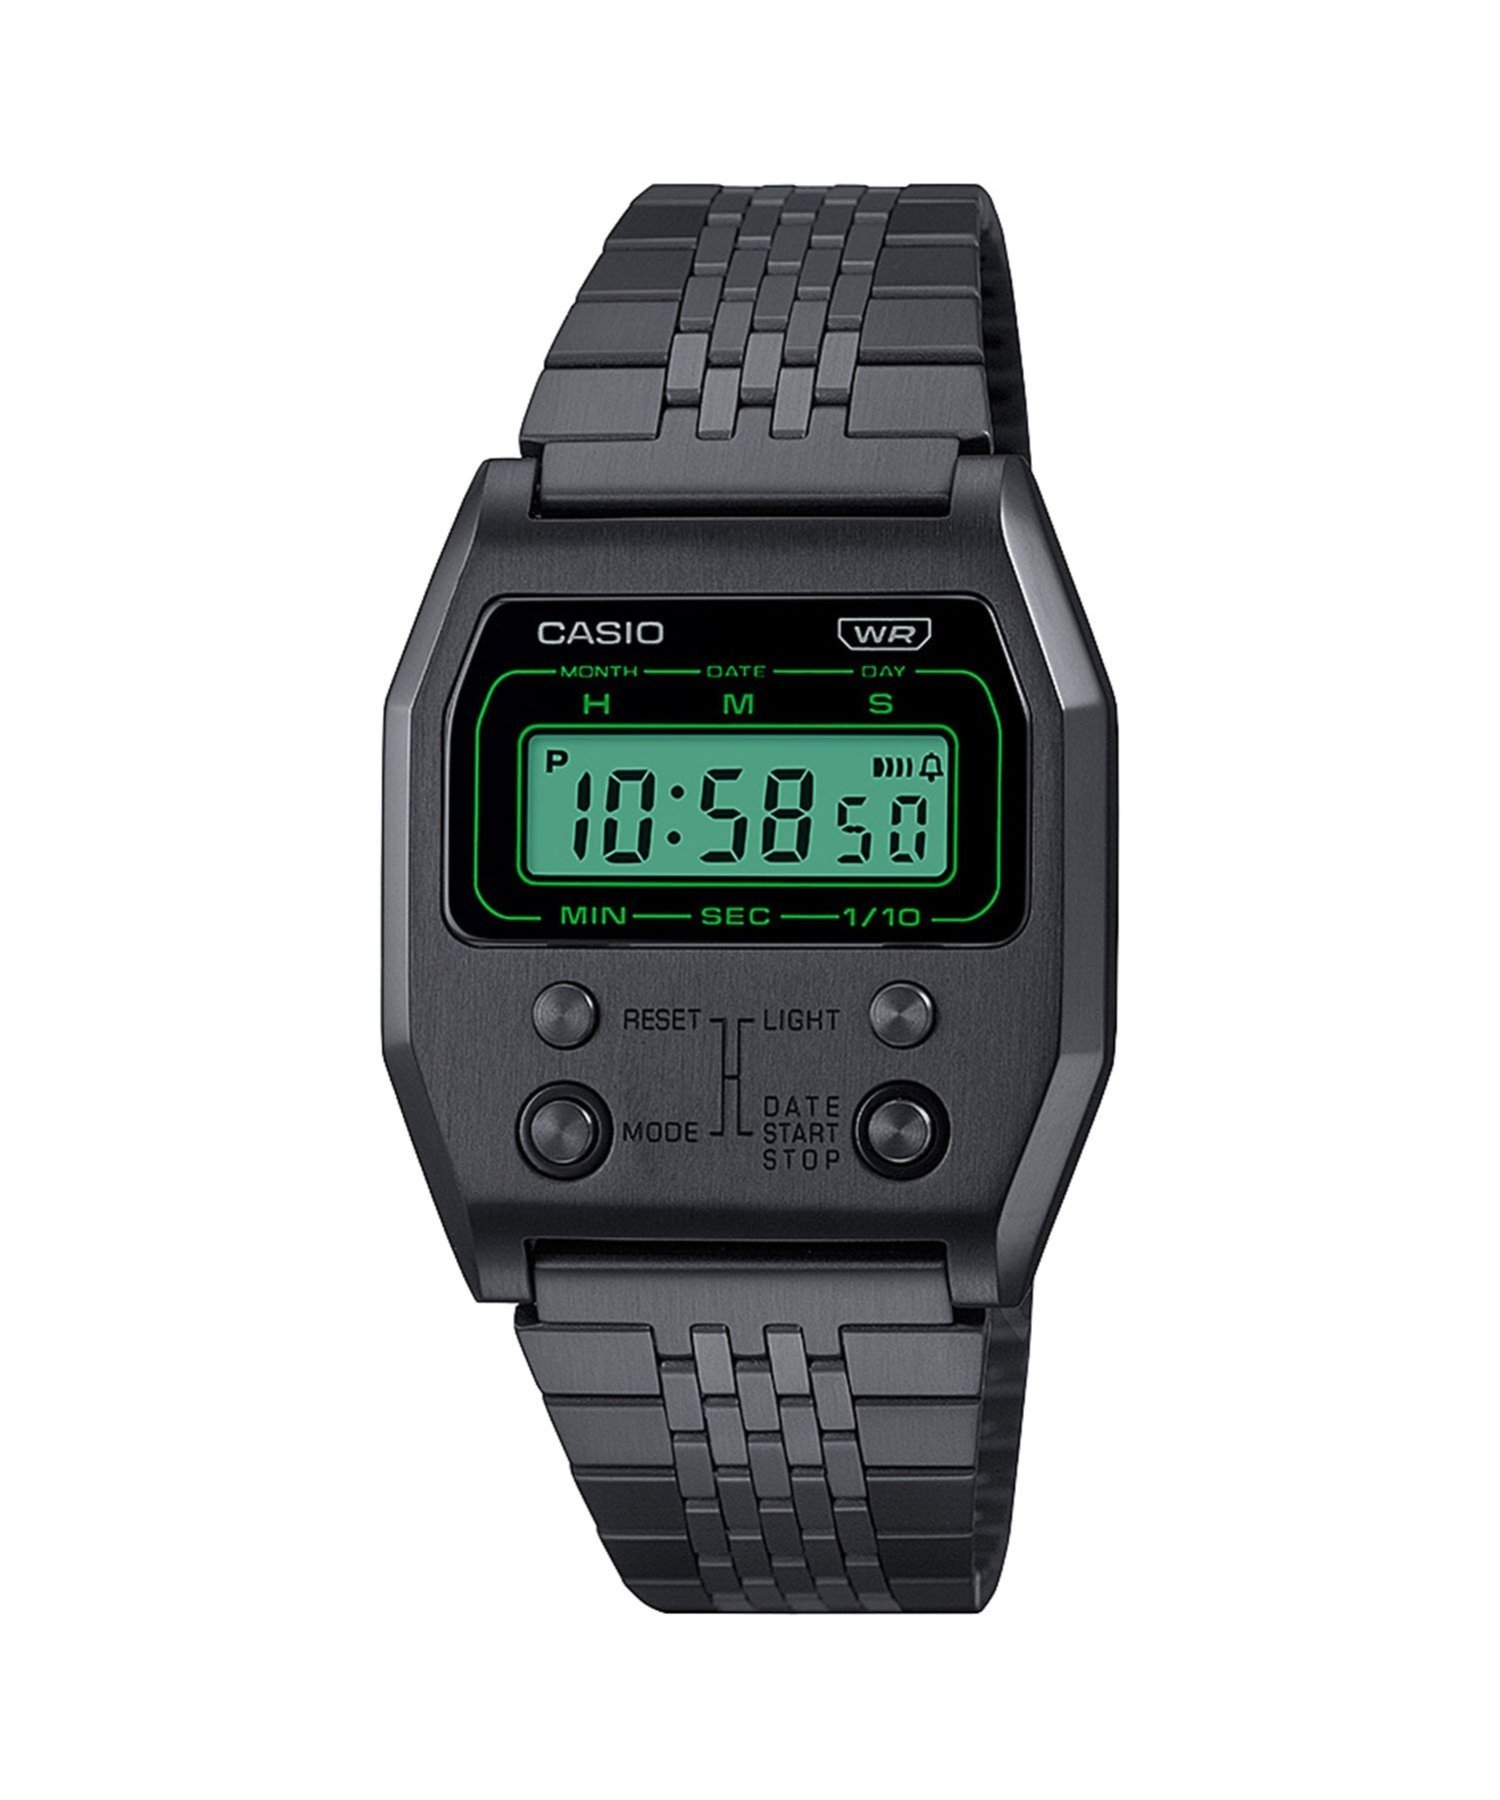 楽天Rakuten FashionCASIO CASIO CLASSIC/A1100B-1JF/カシオ ブリッジ アクセサリー・腕時計 腕時計 ブラック【送料無料】